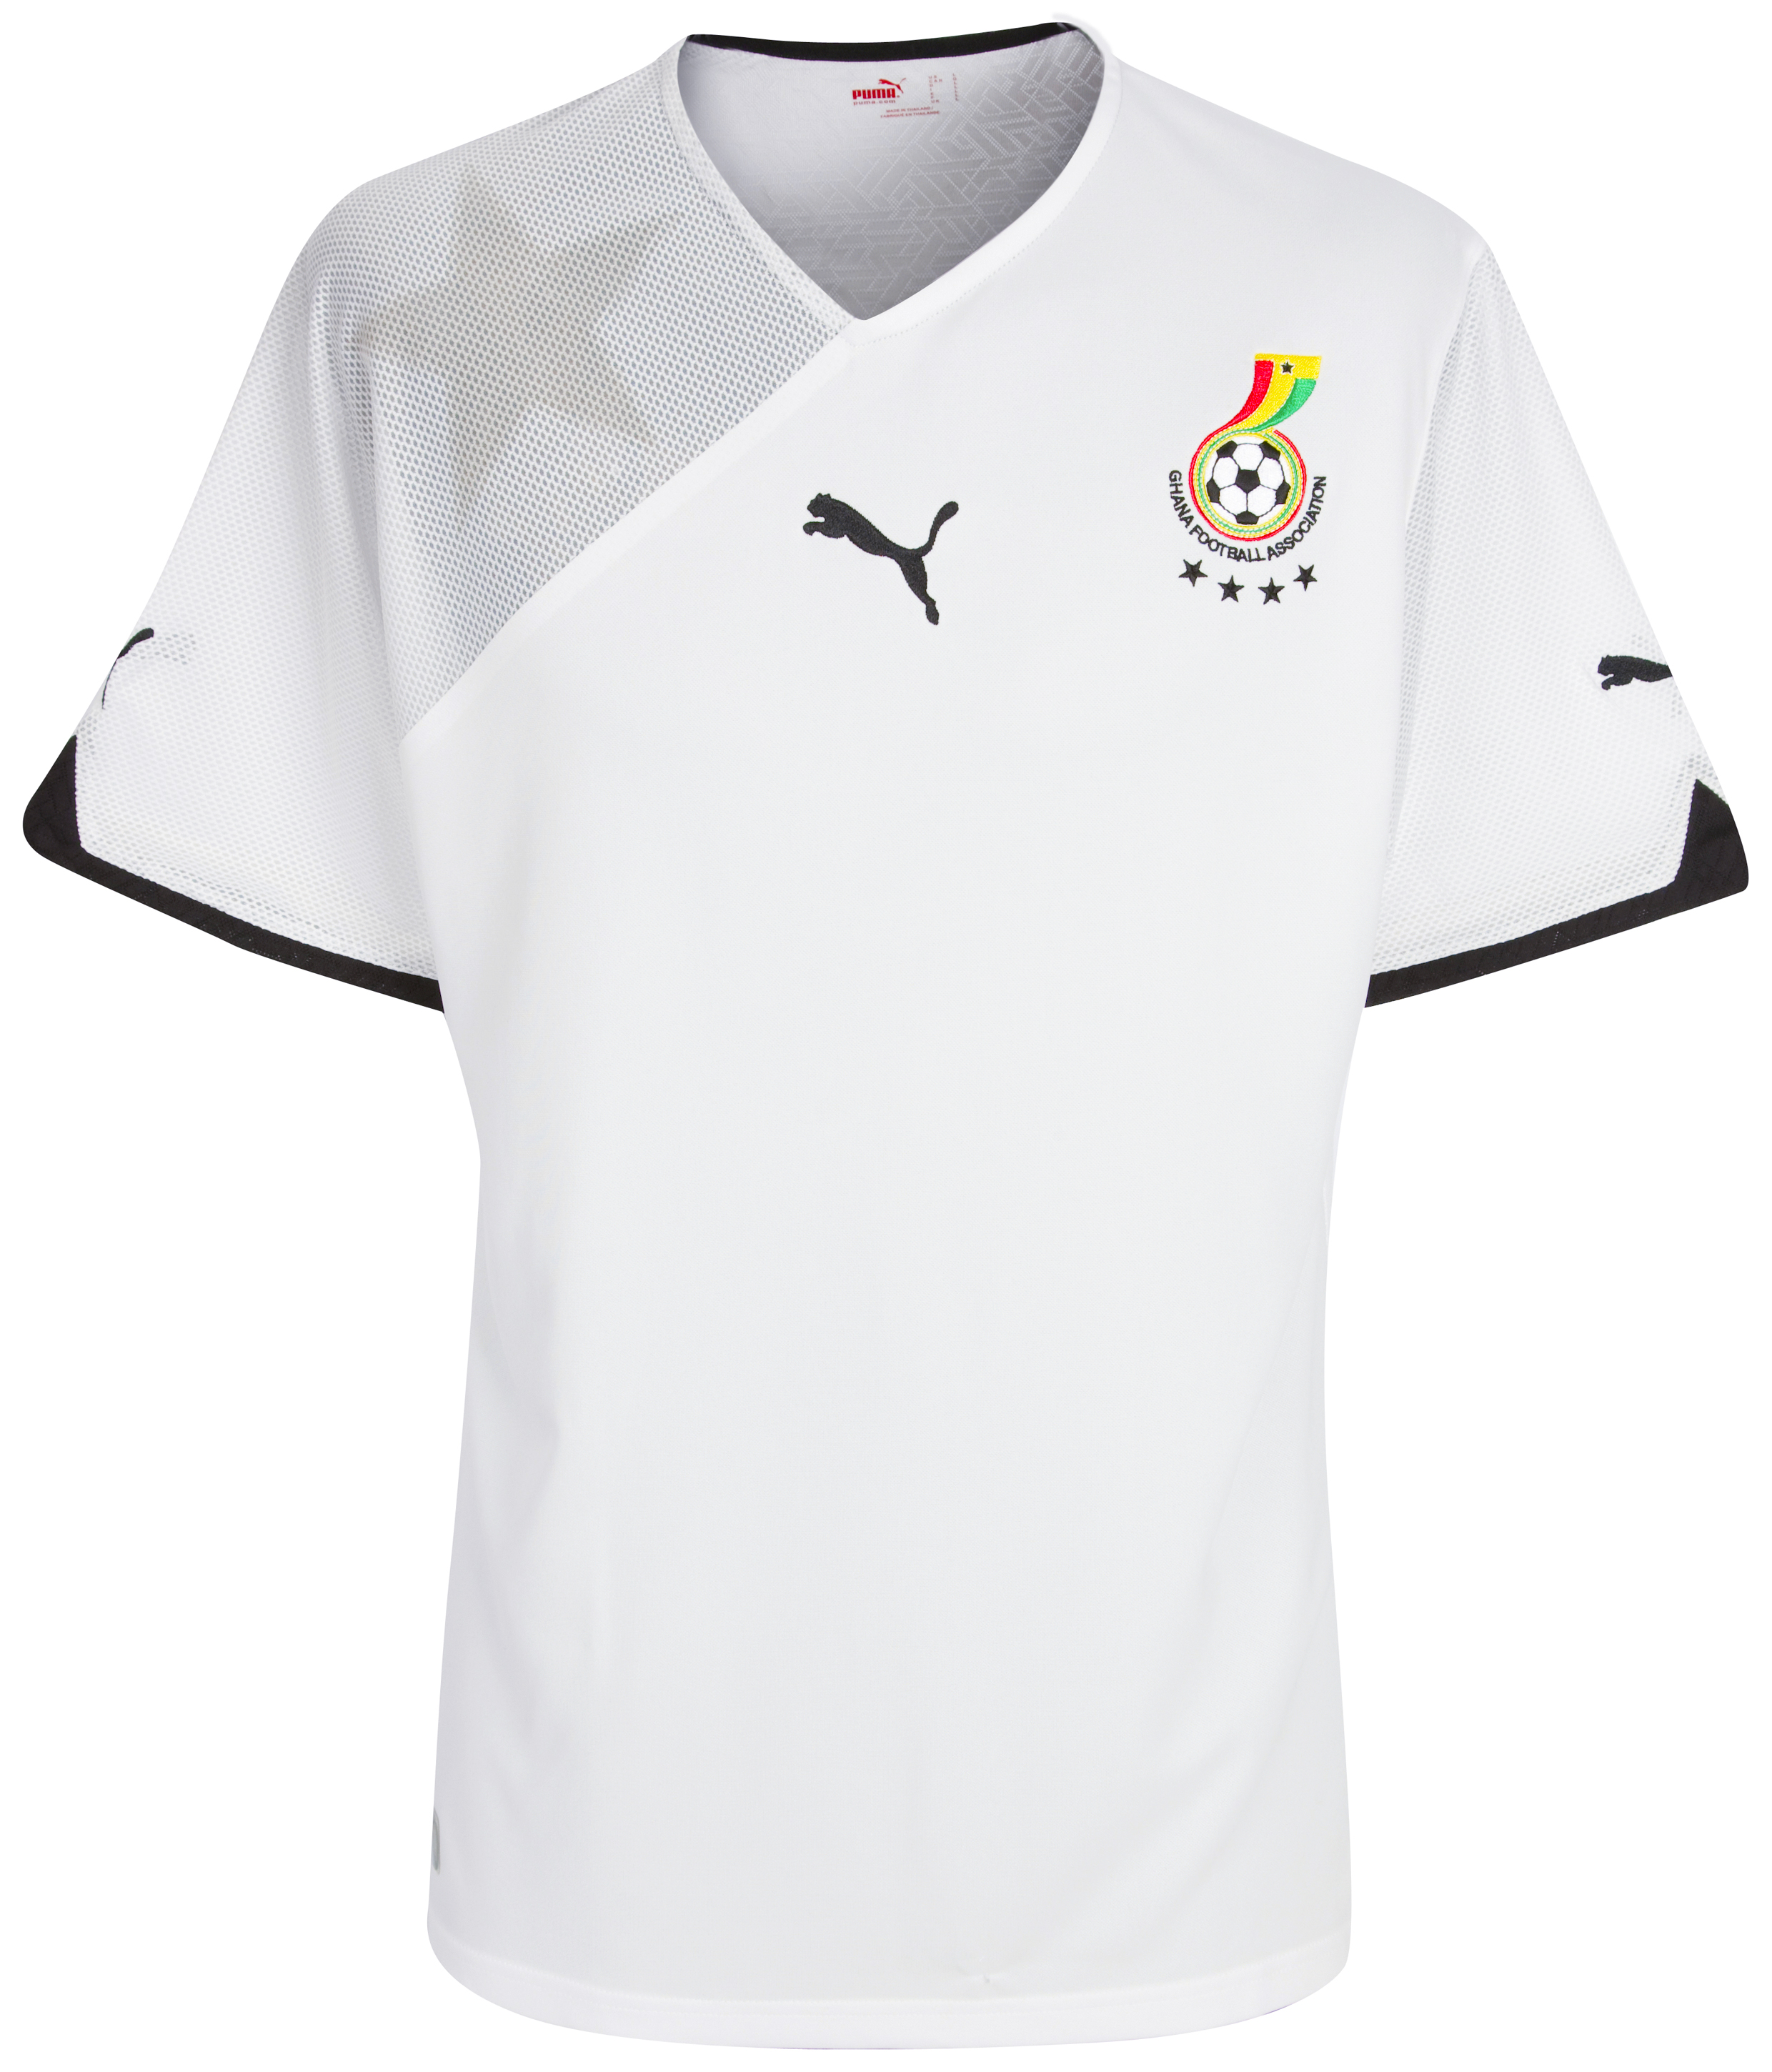 الملابس الخاصة بالمنتخبات في كأس العالم (جنوب أفريقيا 2010) Kb-60874